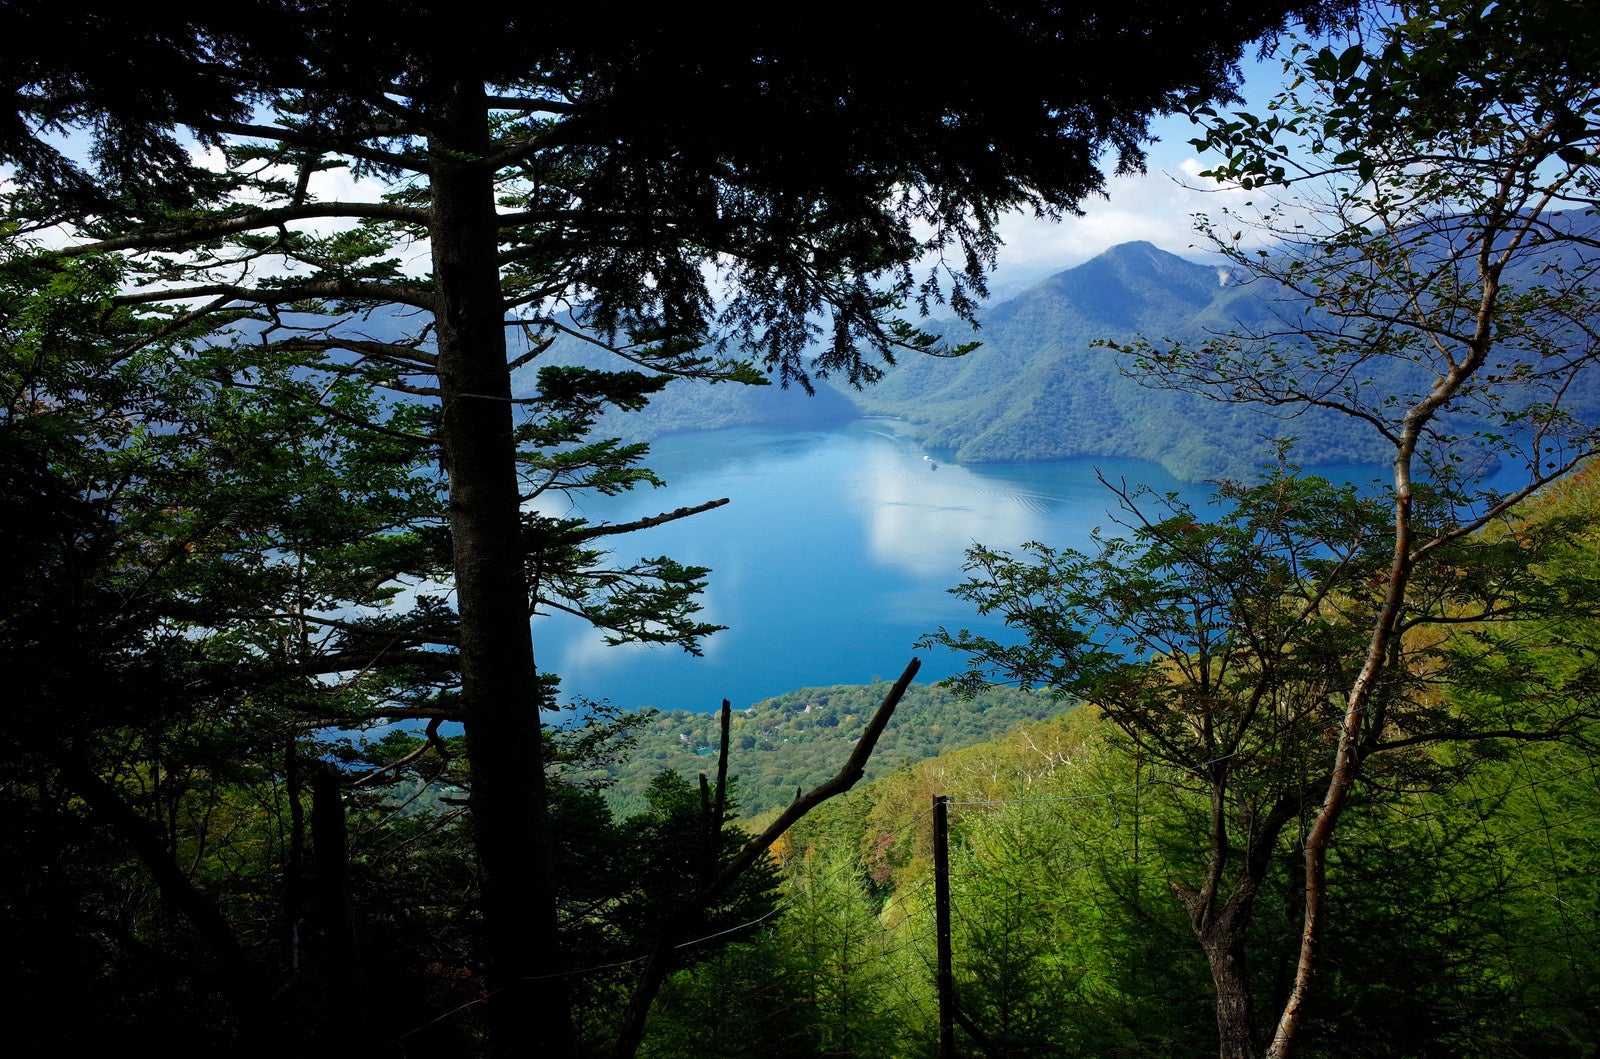 「男体山登山道から見下ろす中禅寺湖（ちゅうぜんじこ）」の写真